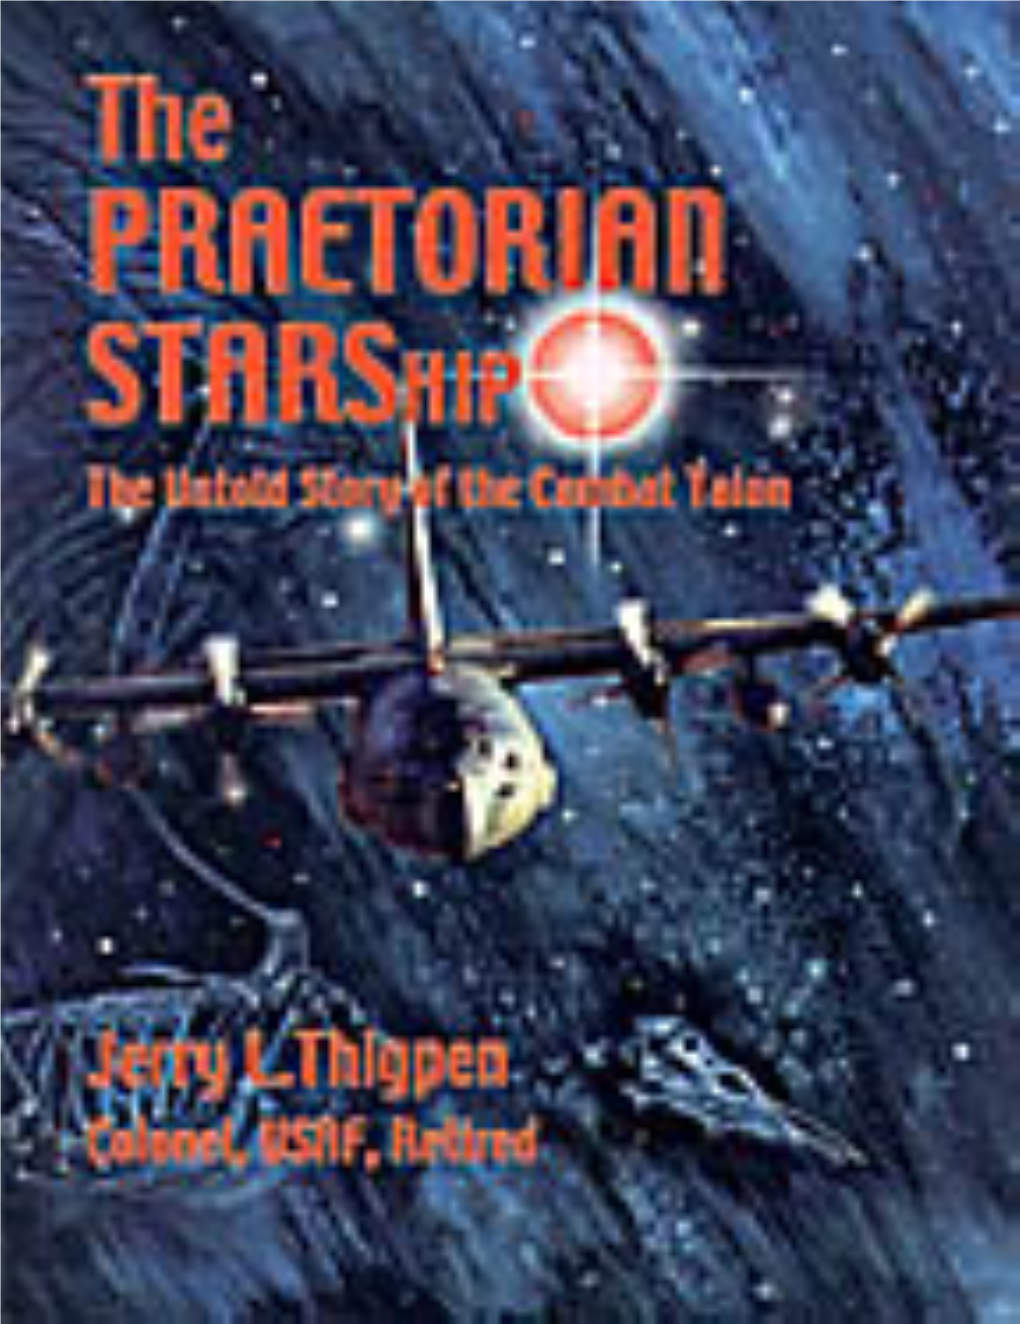 The Praetorian Starship: the Untold Story of the Combat Talon 5B